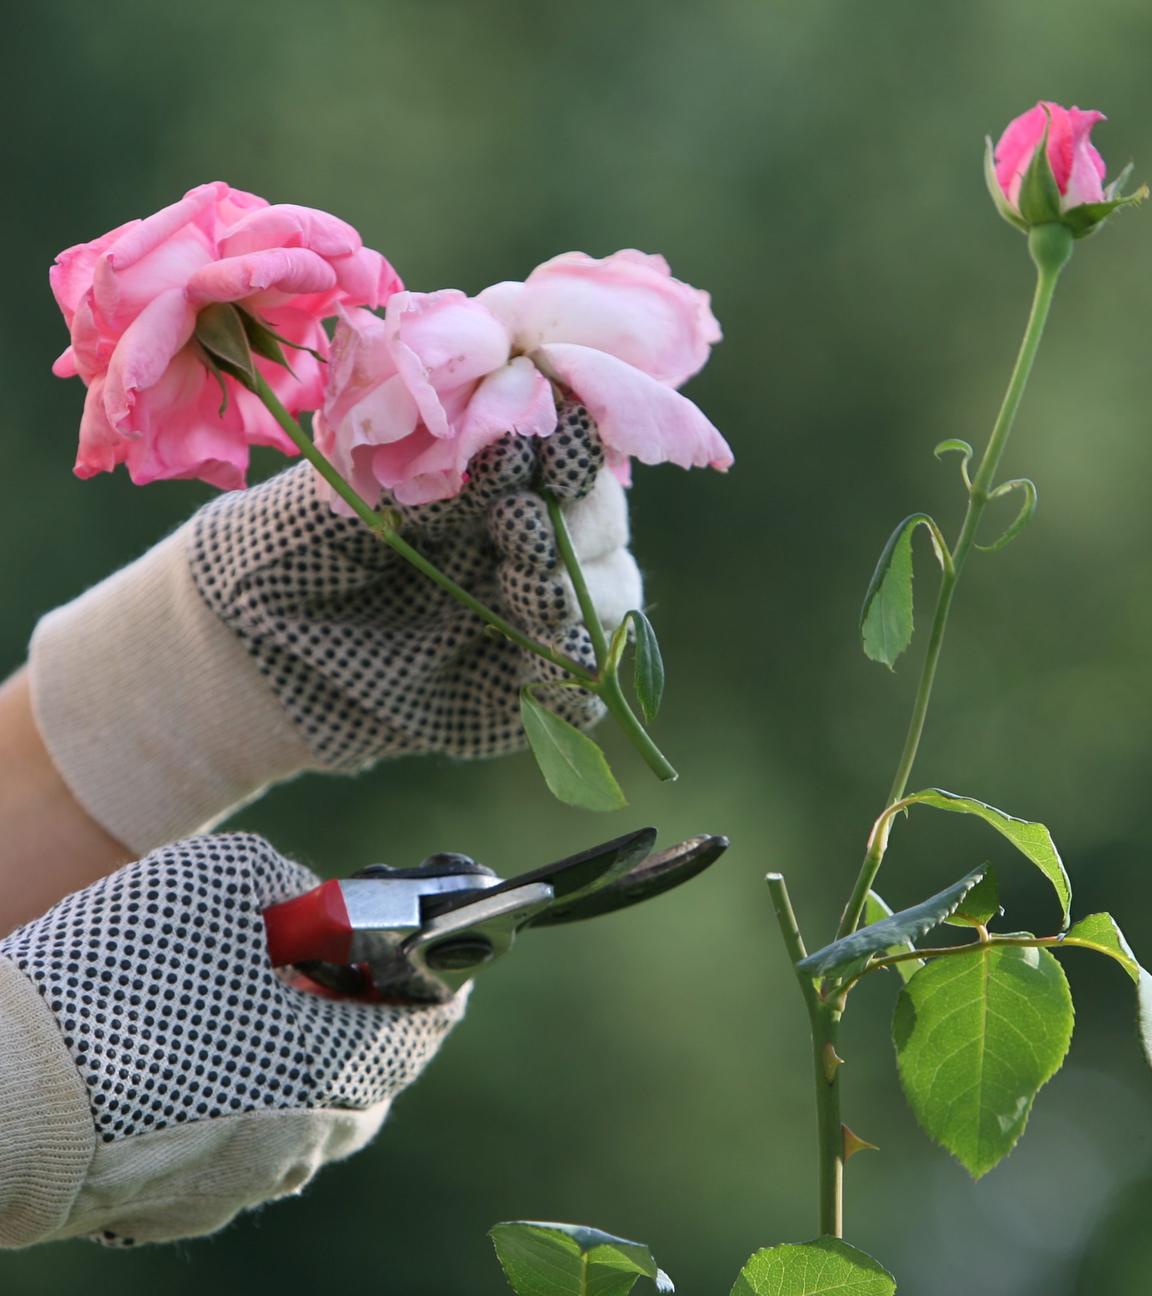 Die Blüten einer pinken Rose werden zurückgeschnitten mit einer Gartenschere.